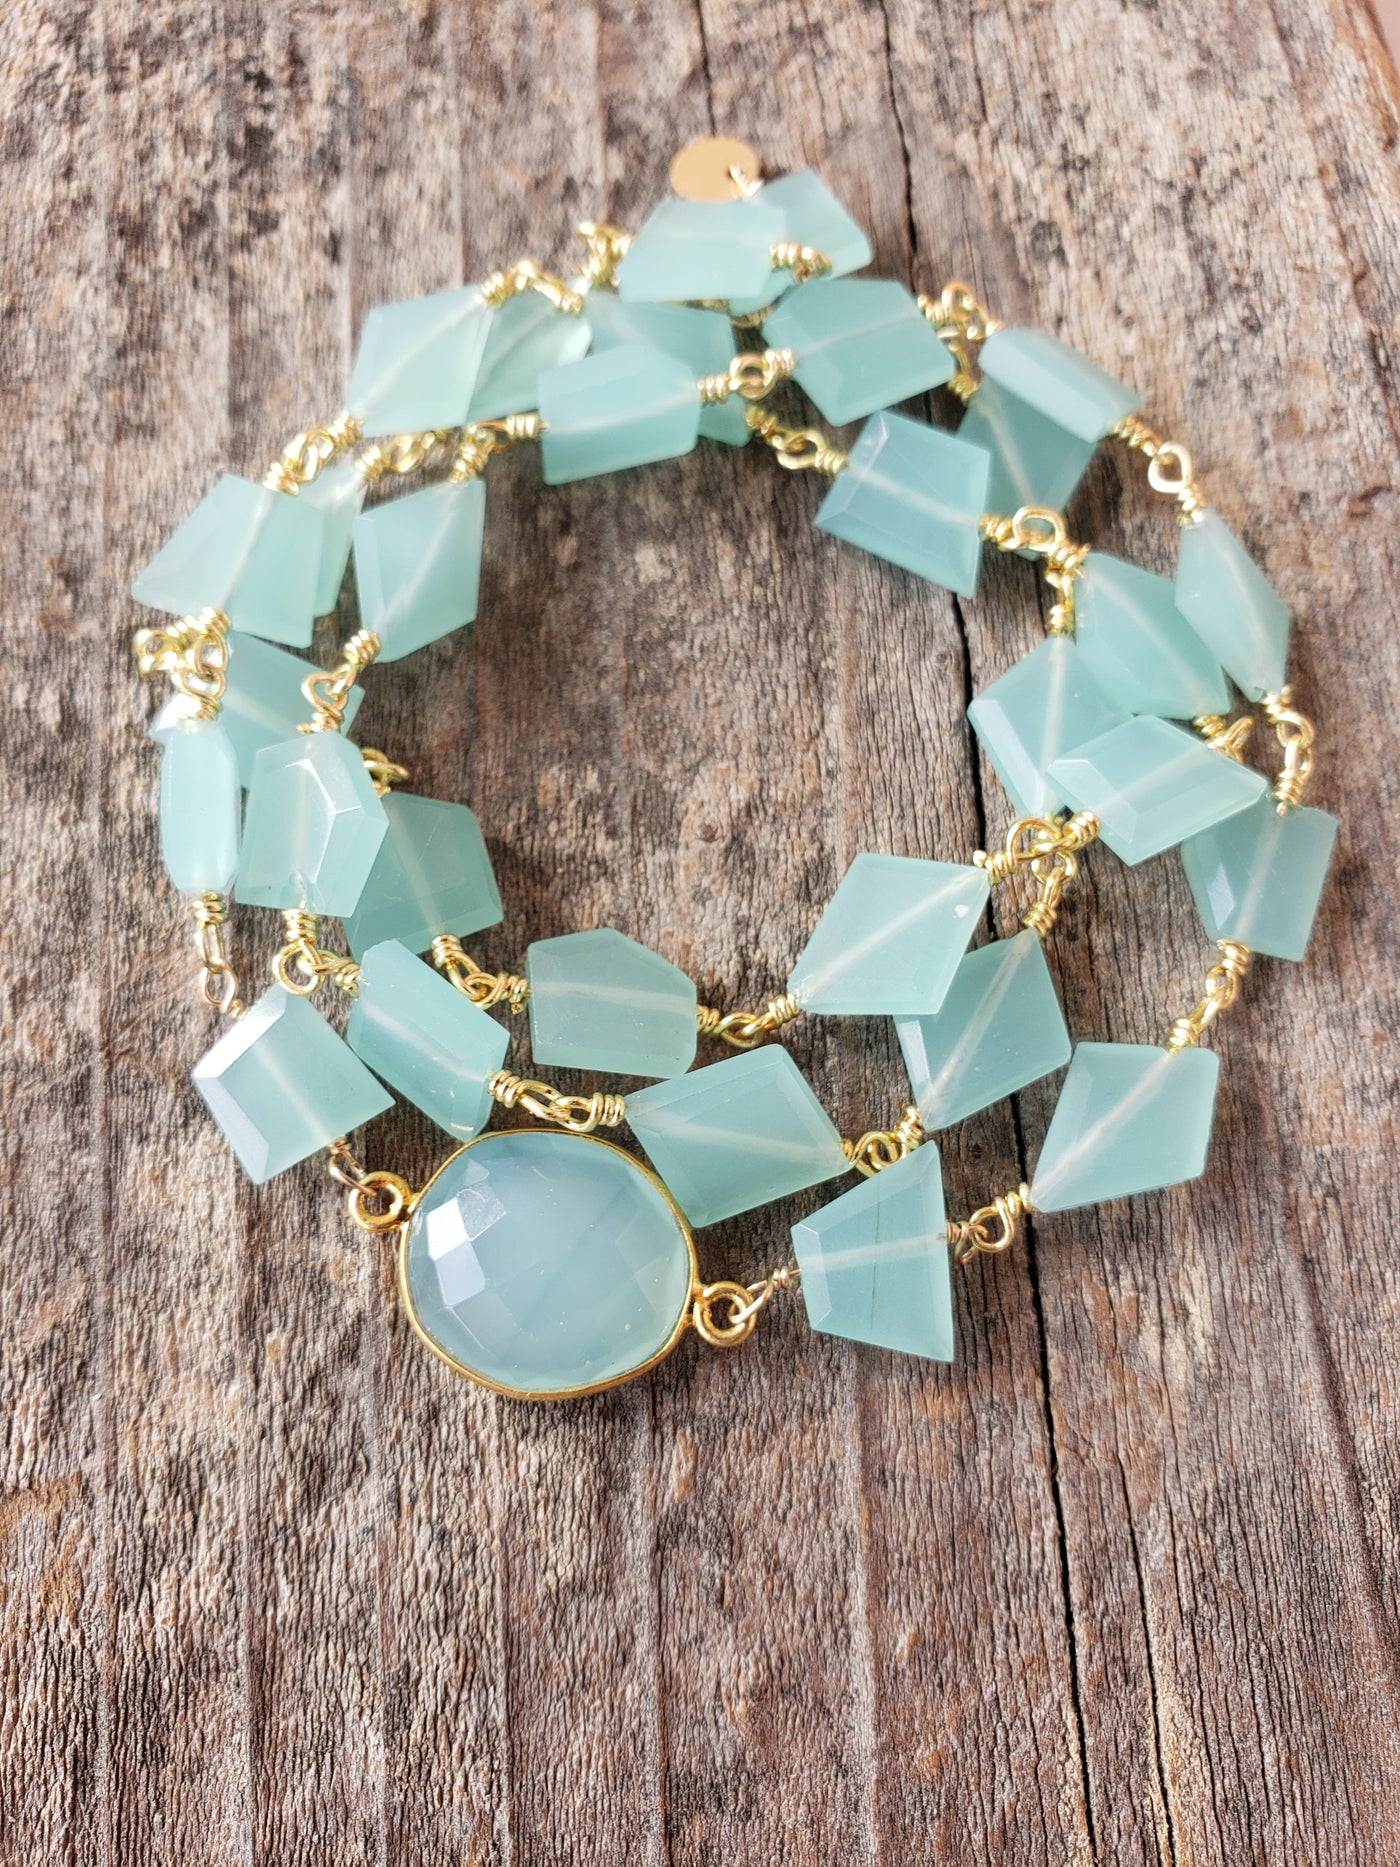 Hana Wrap Bracelet/Necklace in Chalcedony - Chunky Stone